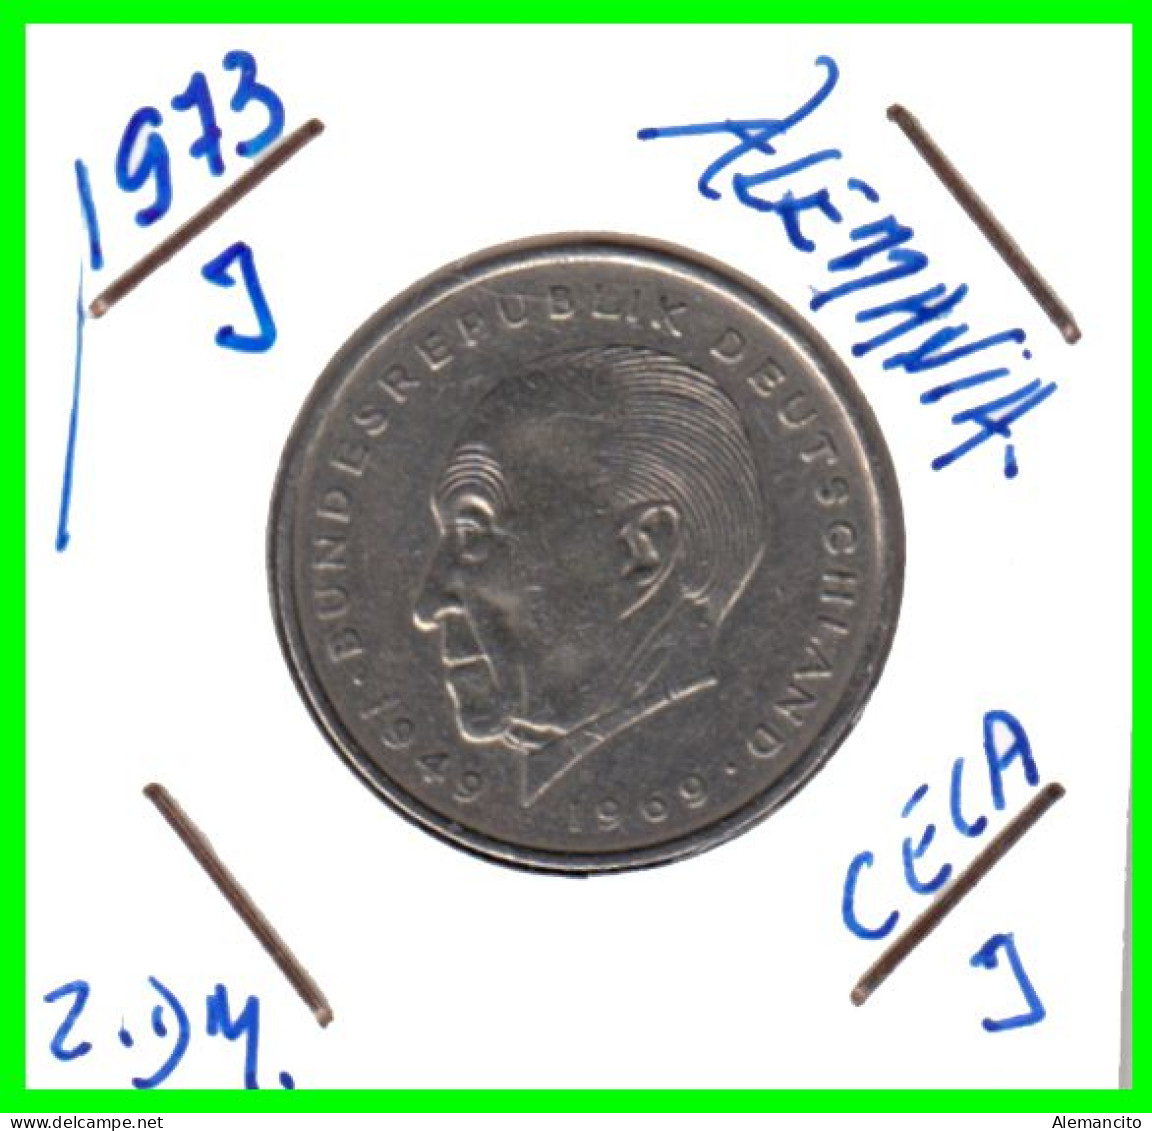 COIN ALEMANIA ( GERMANY ) MONEDA DE 2.00 DM AÑO 1973 CECA-J - HAMBURG - KONRAD ADENAUER NÍQUEL- 26,75 MM CIRCULADA - 2 Marcos